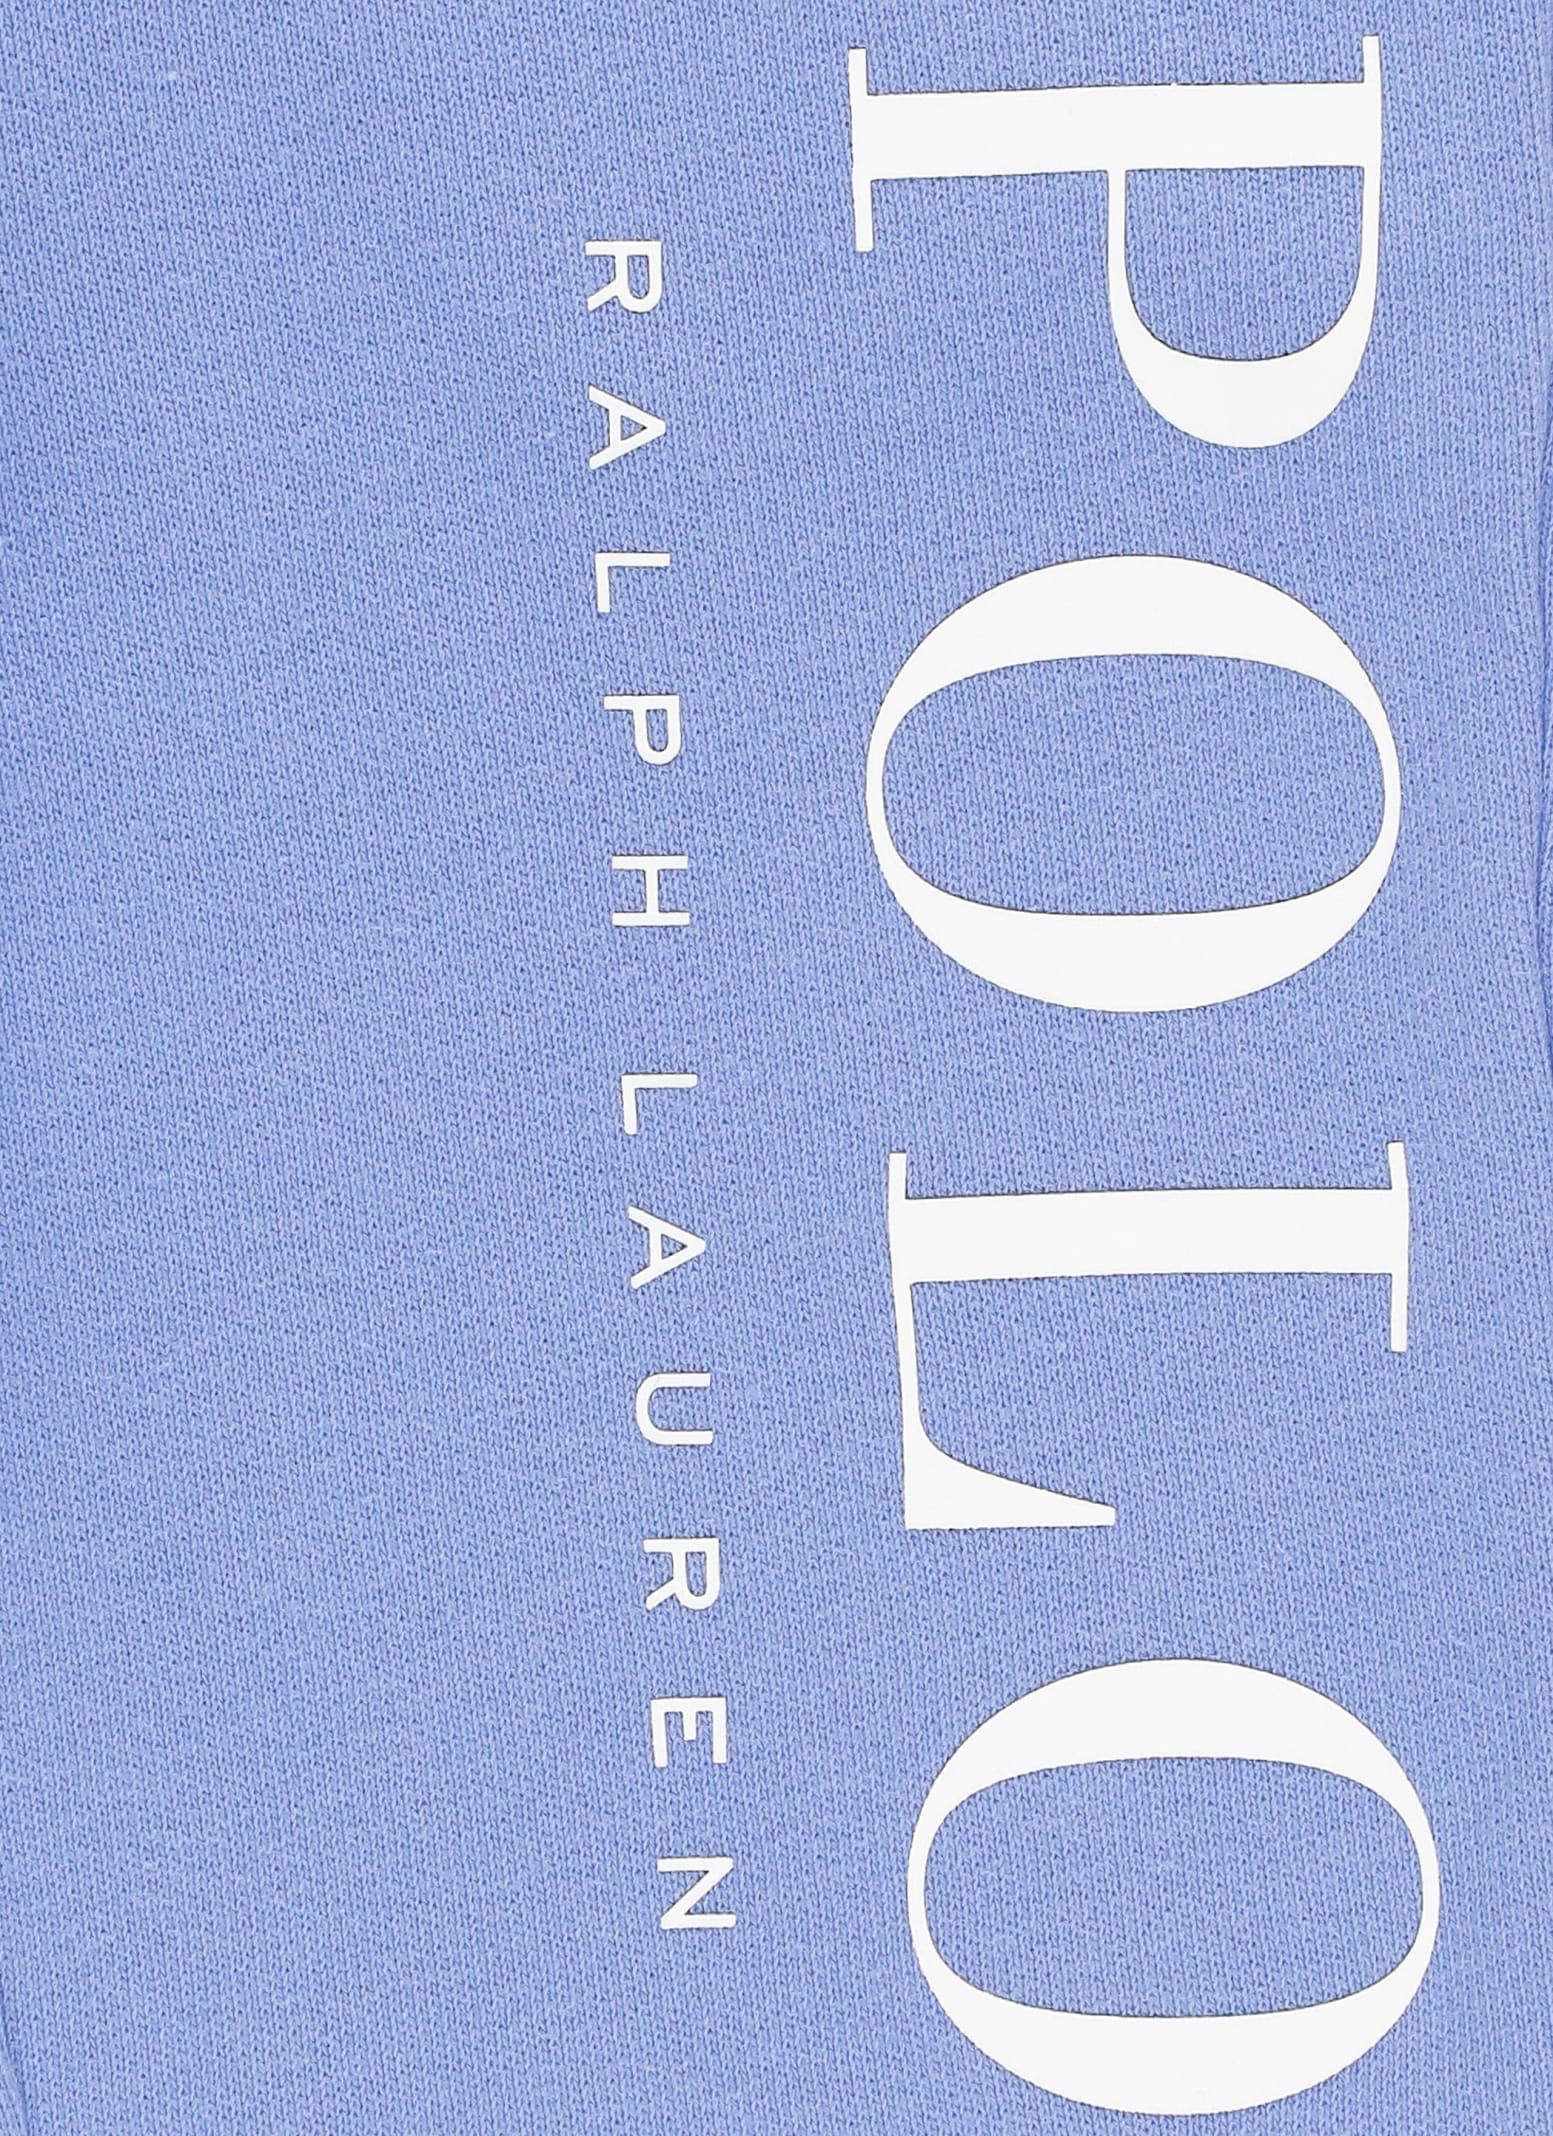 Shop Ralph Lauren Sweatpants With Logo In Blue